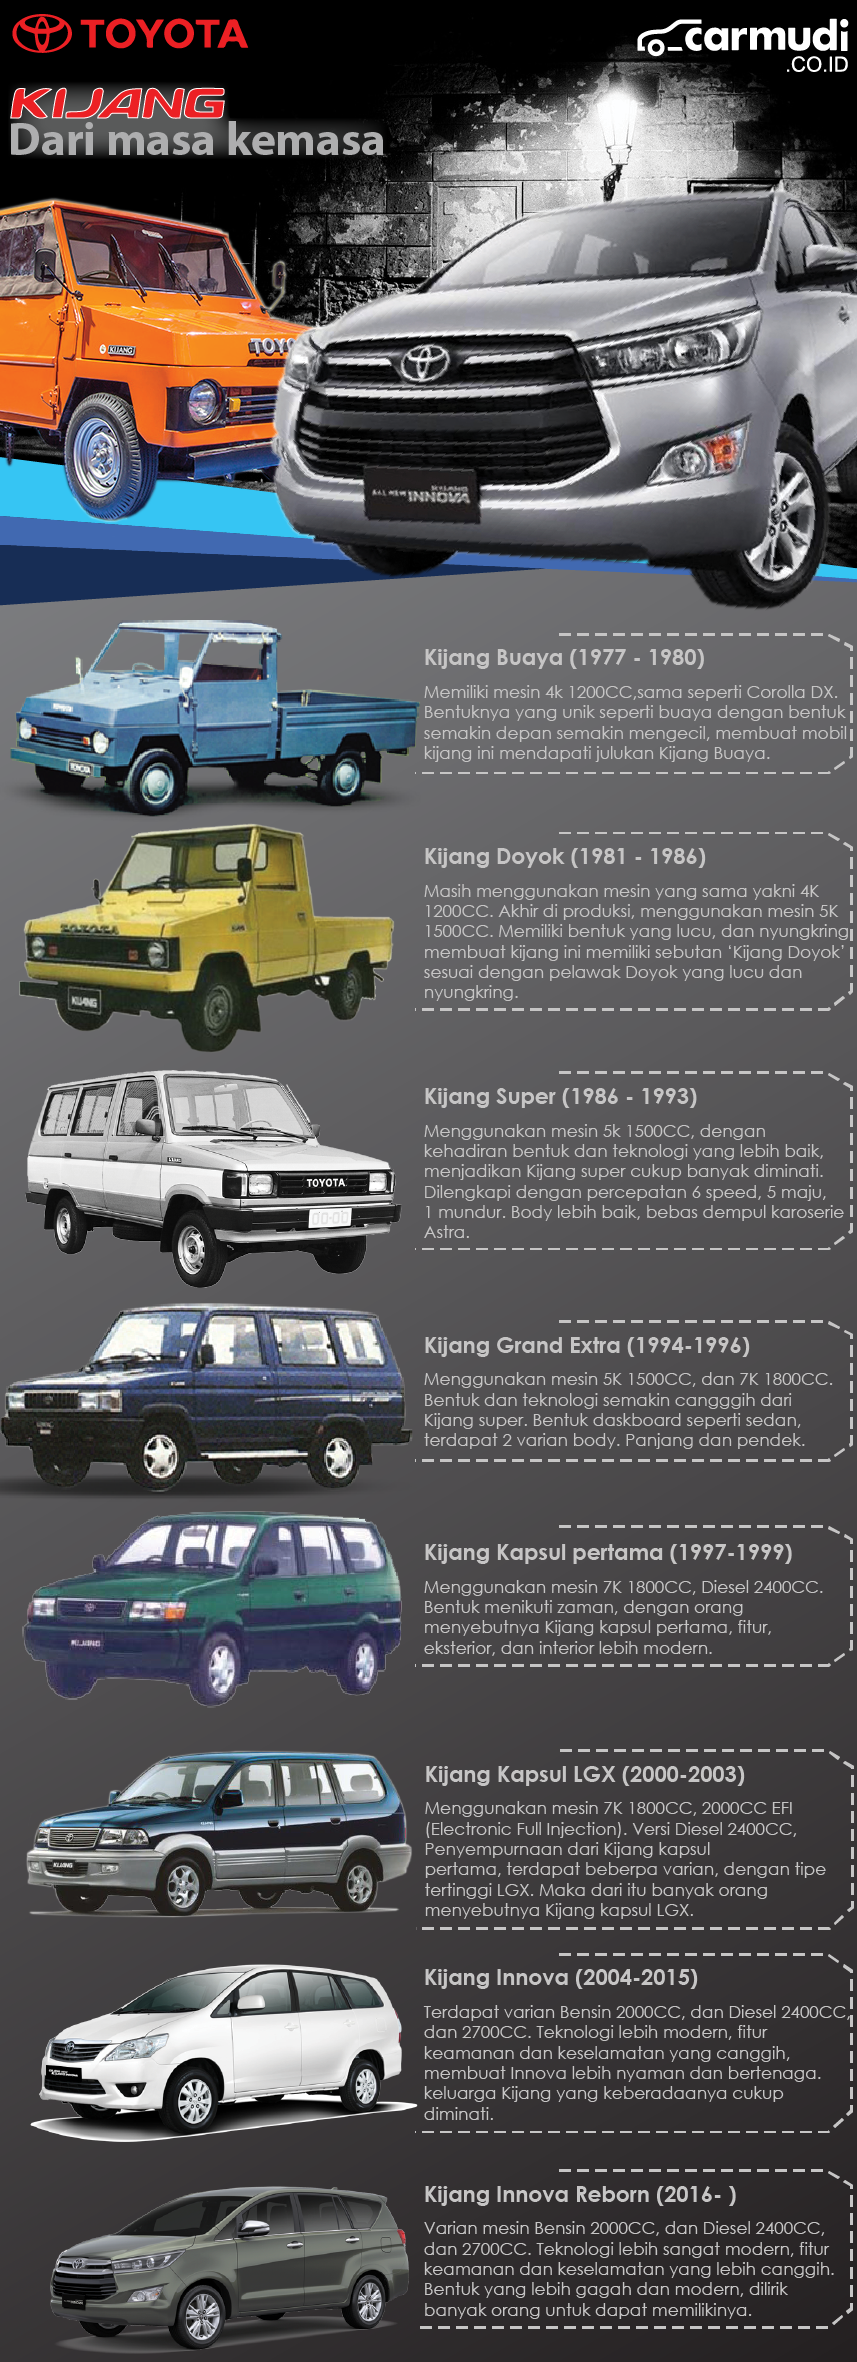 Generasi Toyota Kijang Dalam Infografis Evolusi Mobil Murah